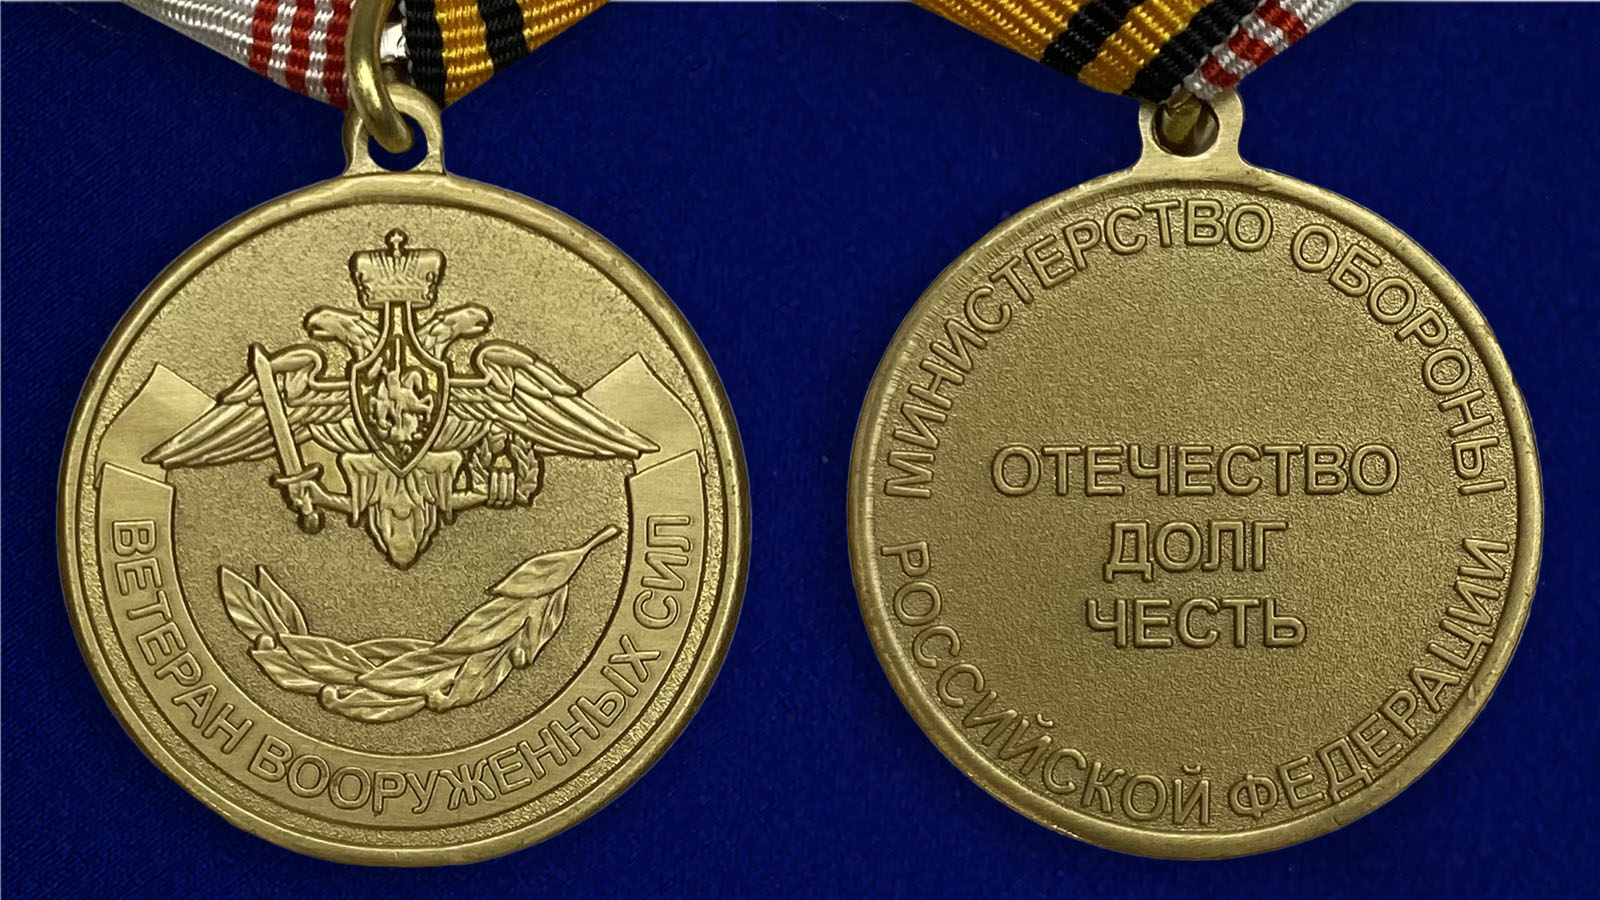 Купить медаль "Ветеран ВС РФ" по лучшей цене